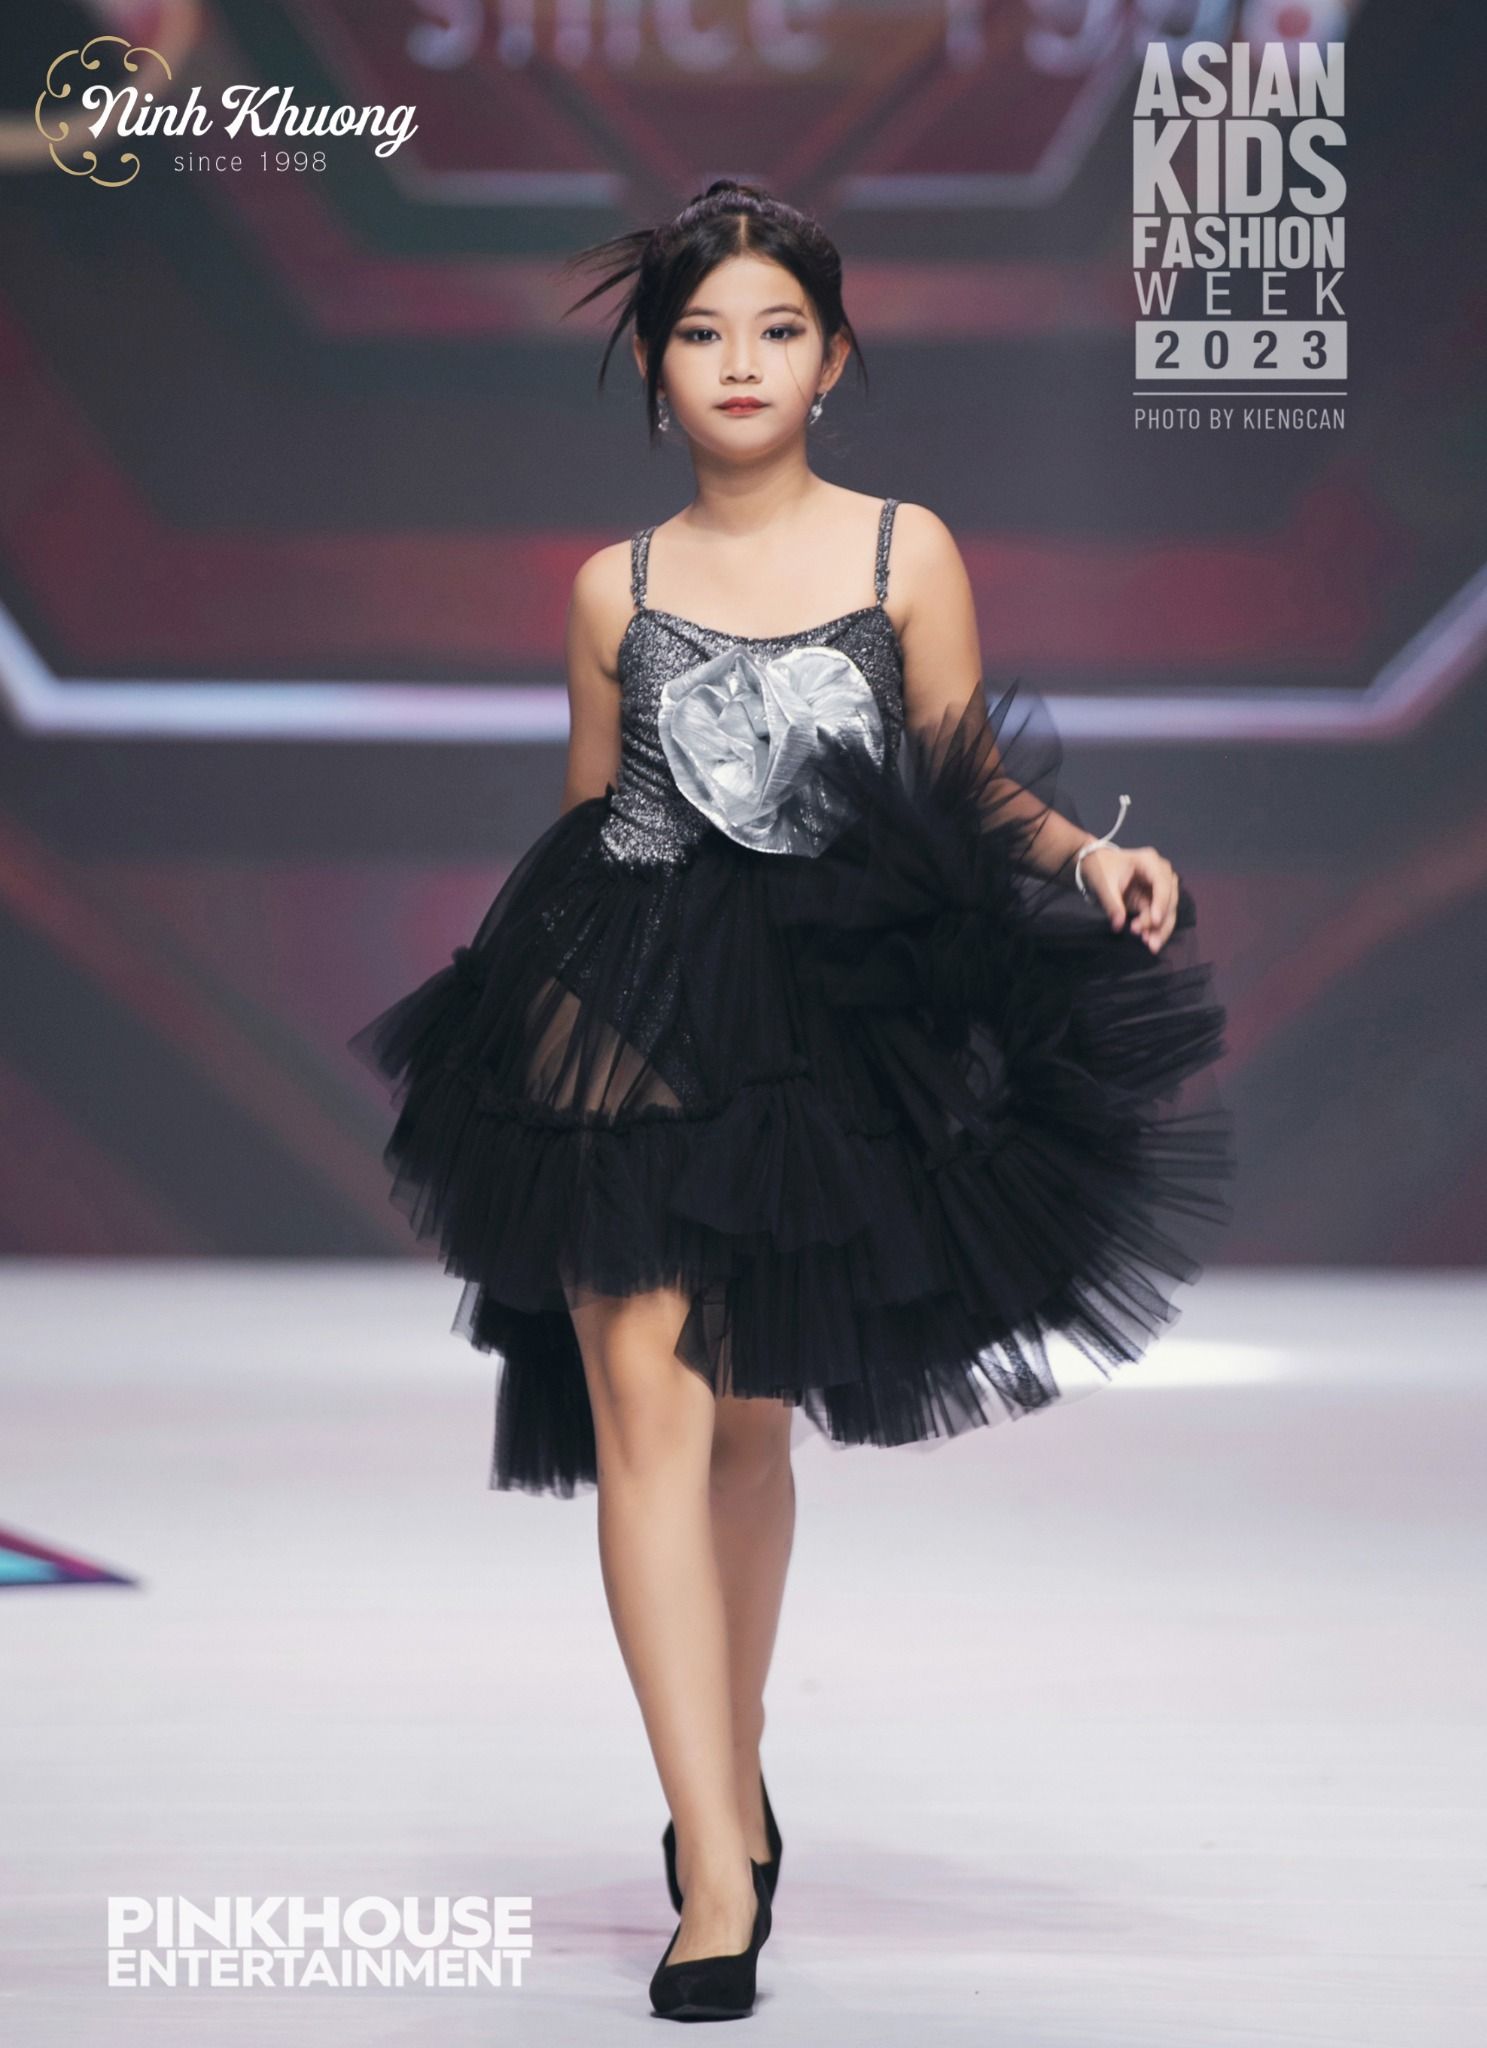  Đầm 2 dây tùng xòe (đen) | Ninh Khương - AKFW 2023 